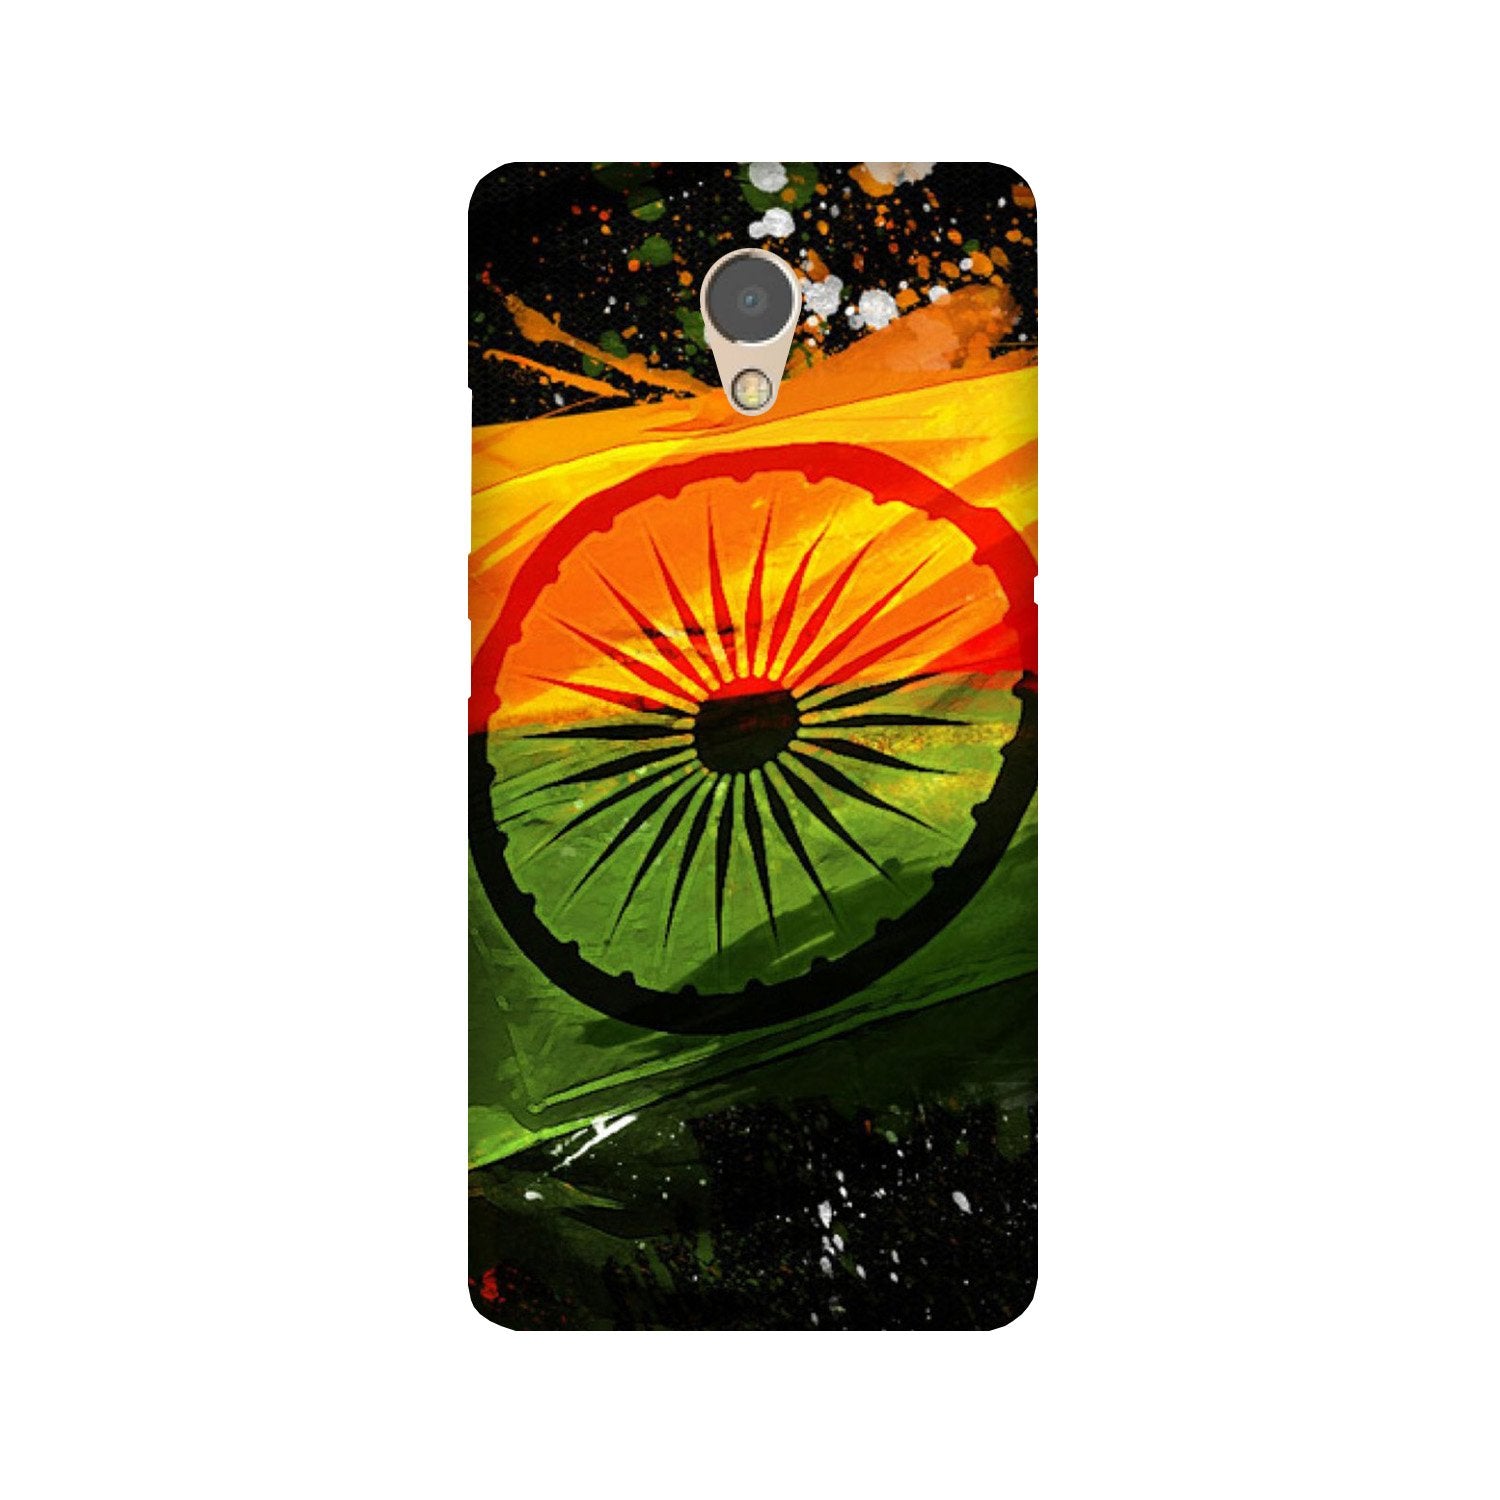 Indian Flag Case for Lenovo P2(Design - 137)